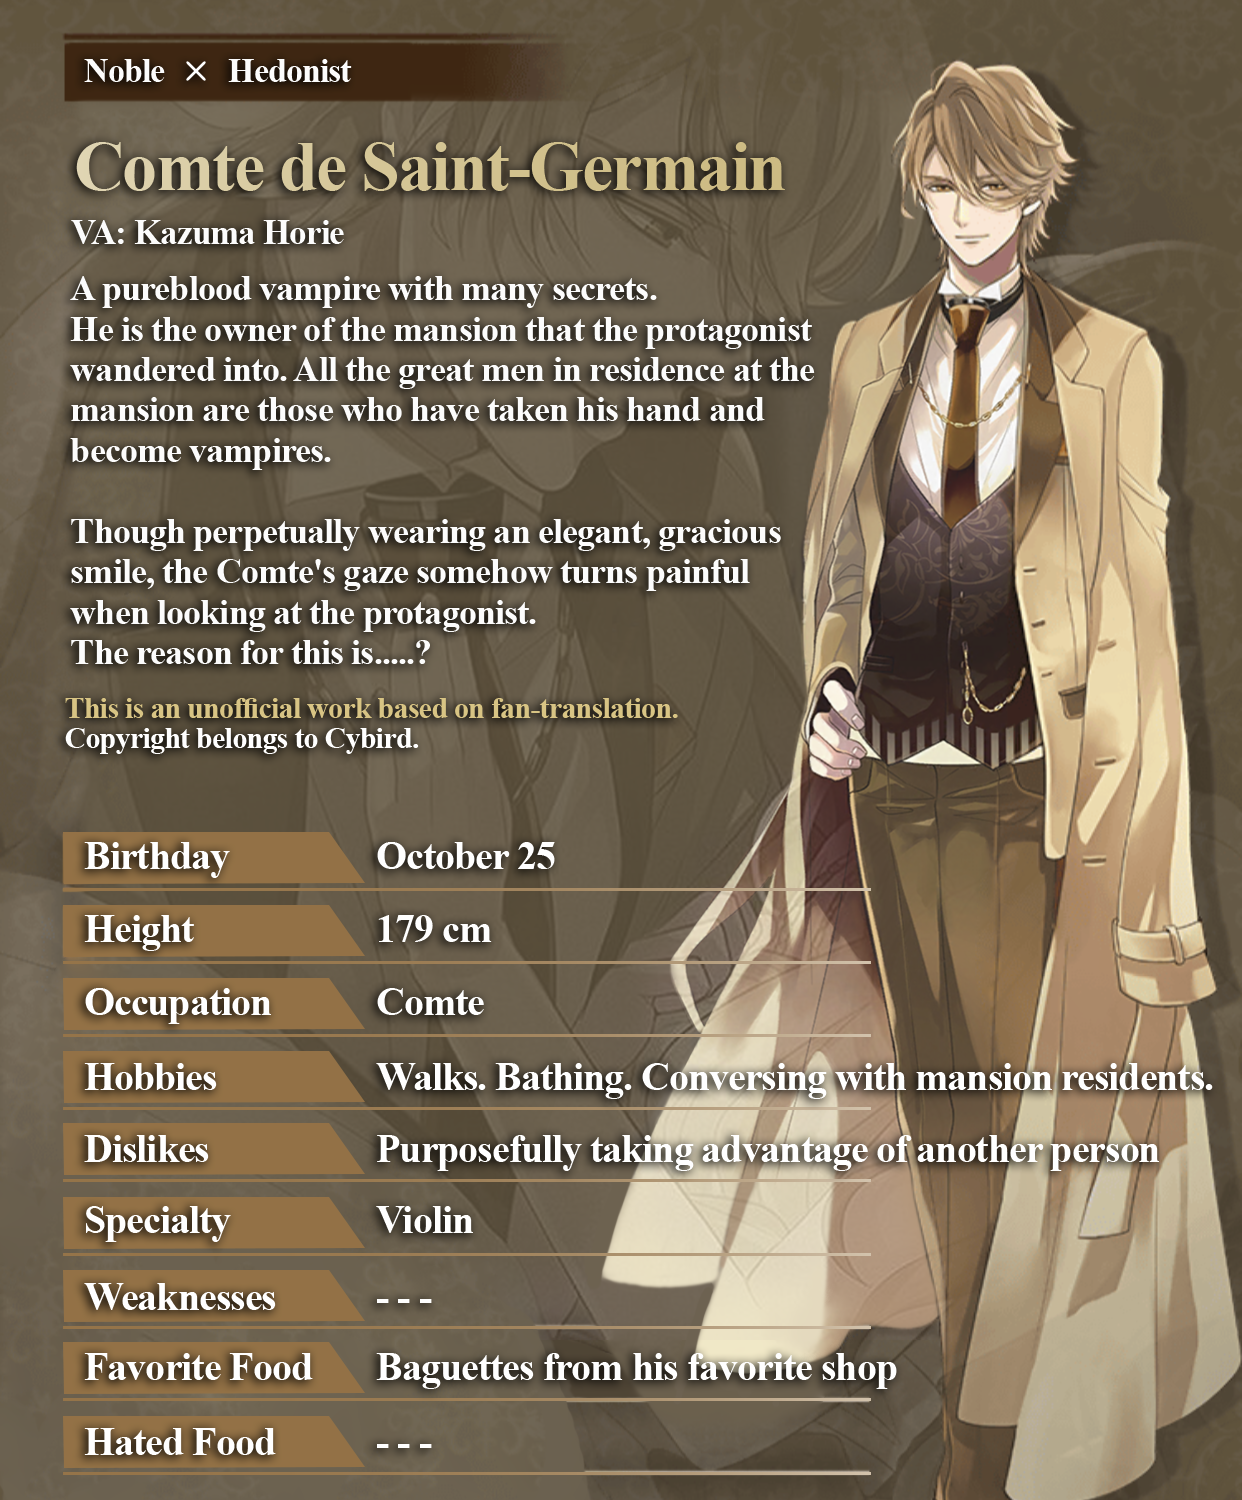 IkeVamp Archive — Comte de Saint-Germain Profile Voiced Lines: ...